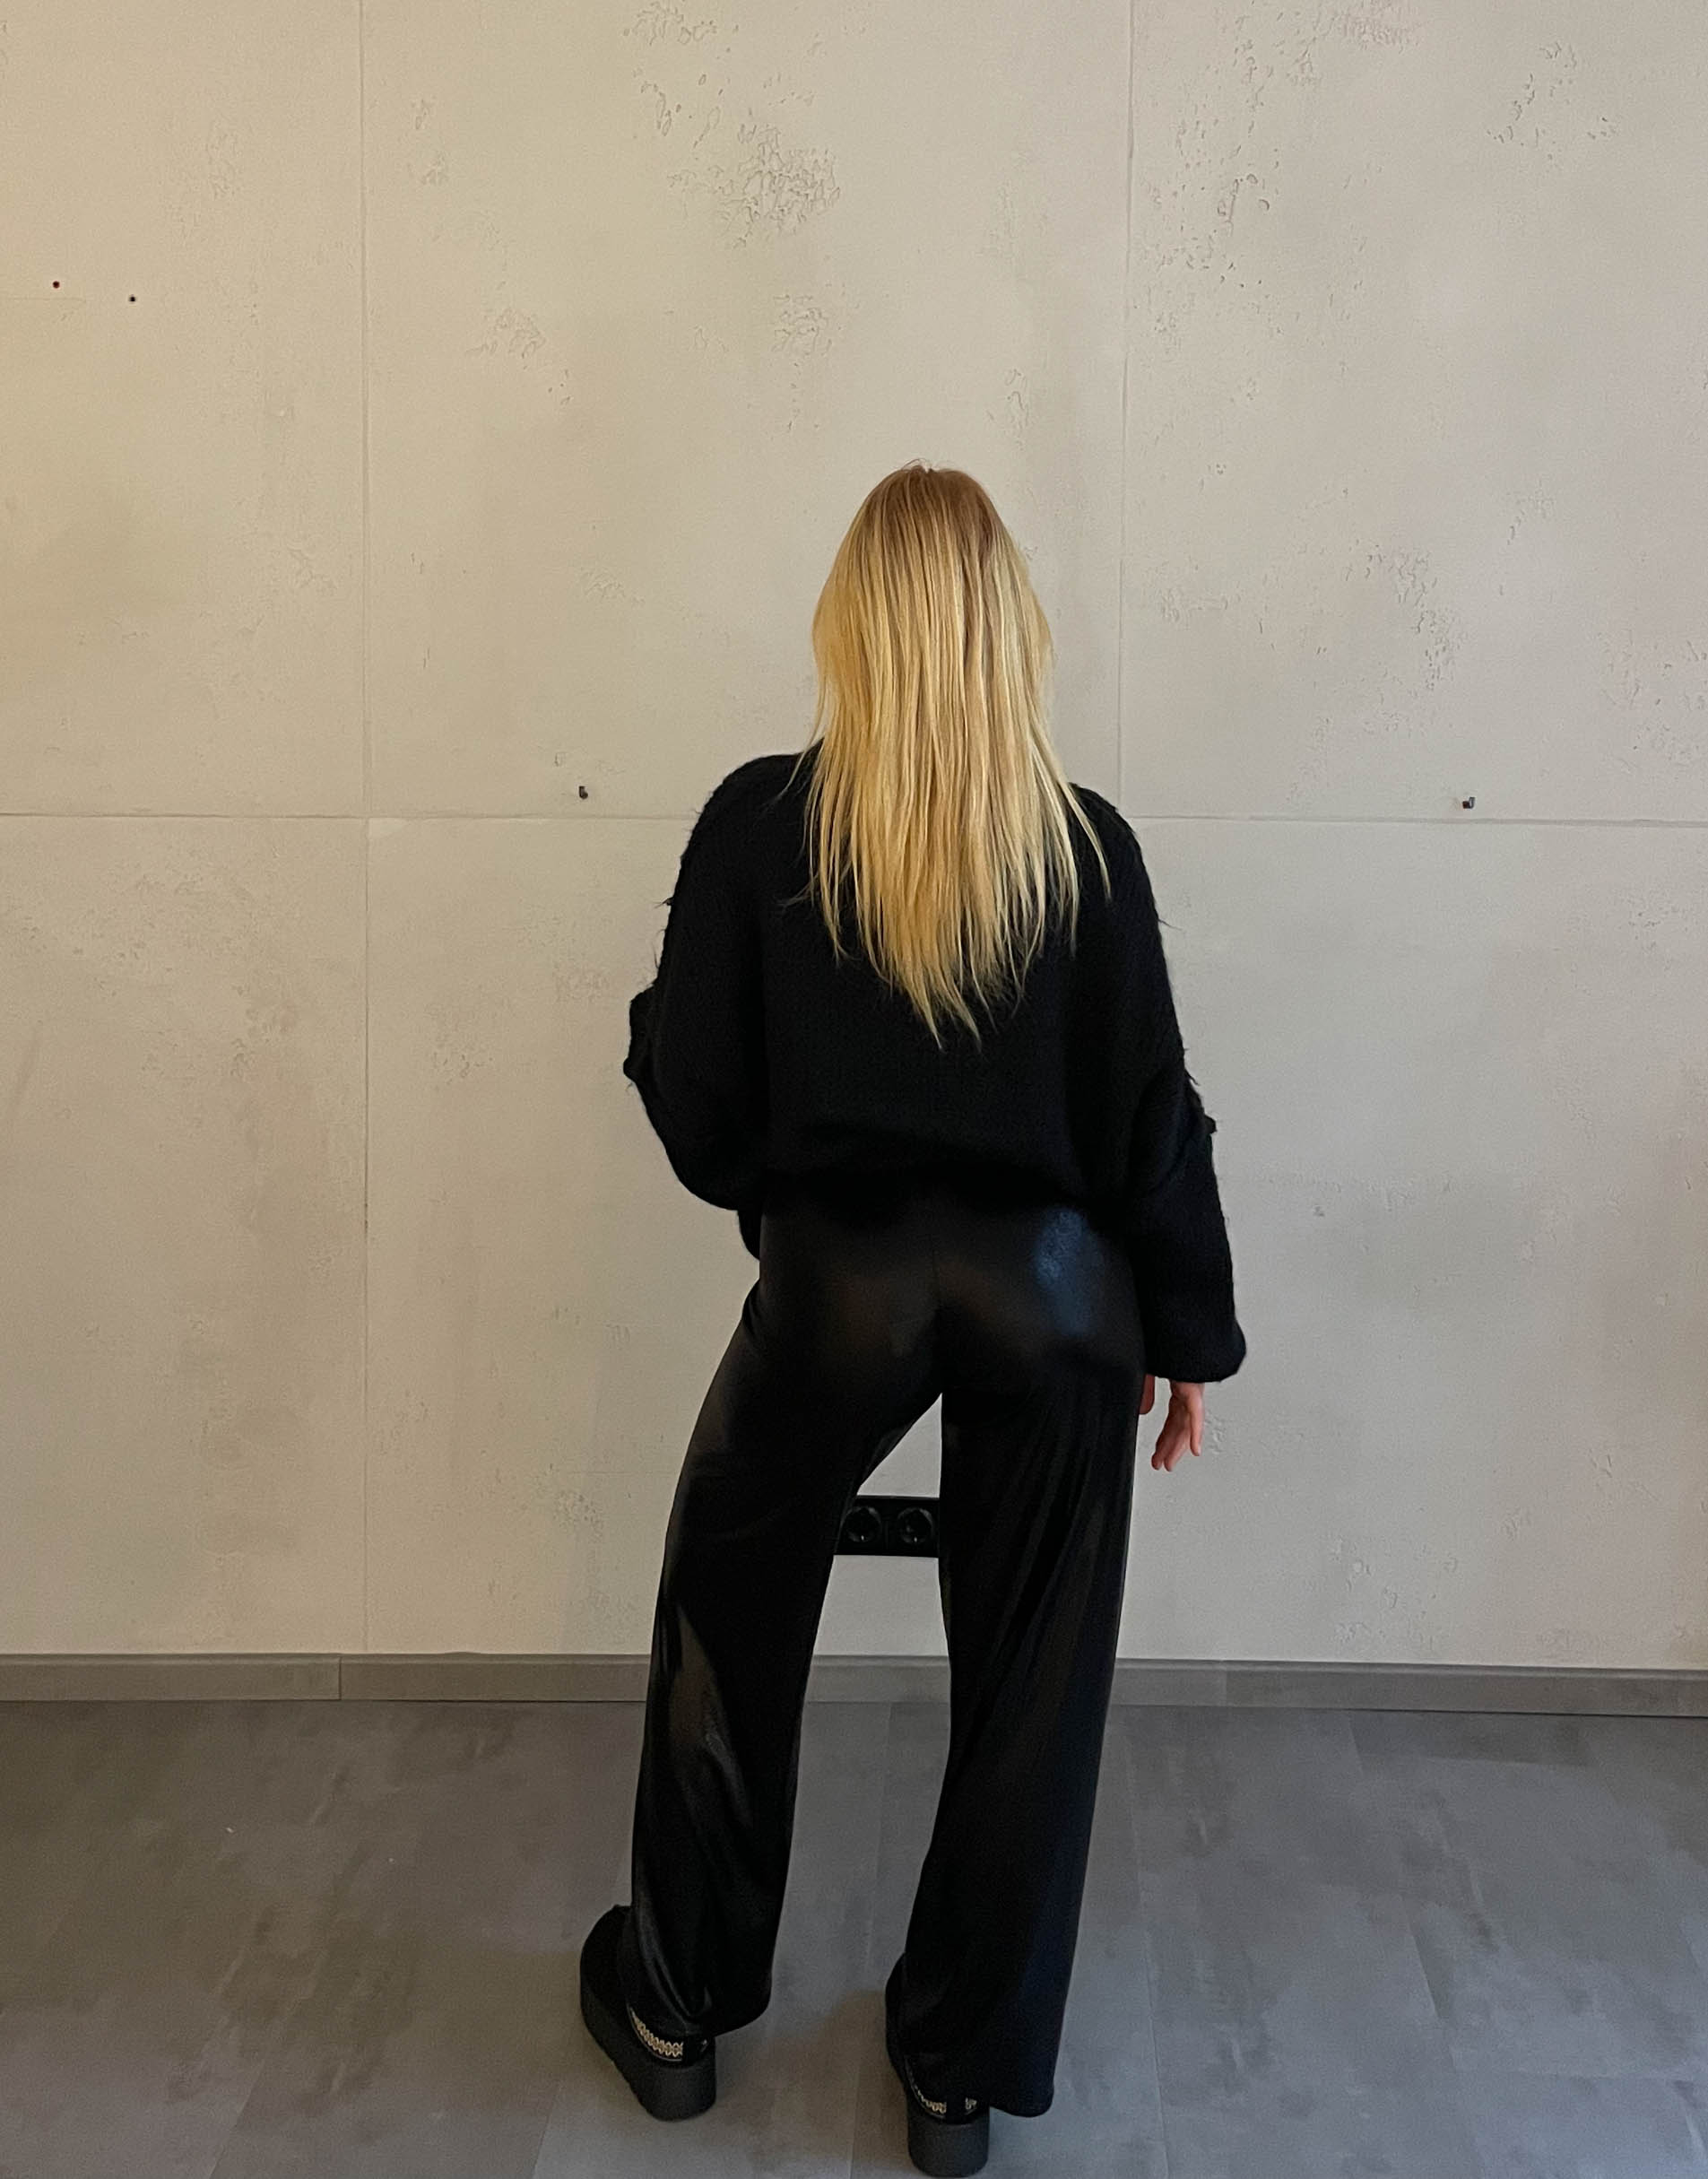 Frau mit blonden Haaren trägt glänzende Hose in Schwarz